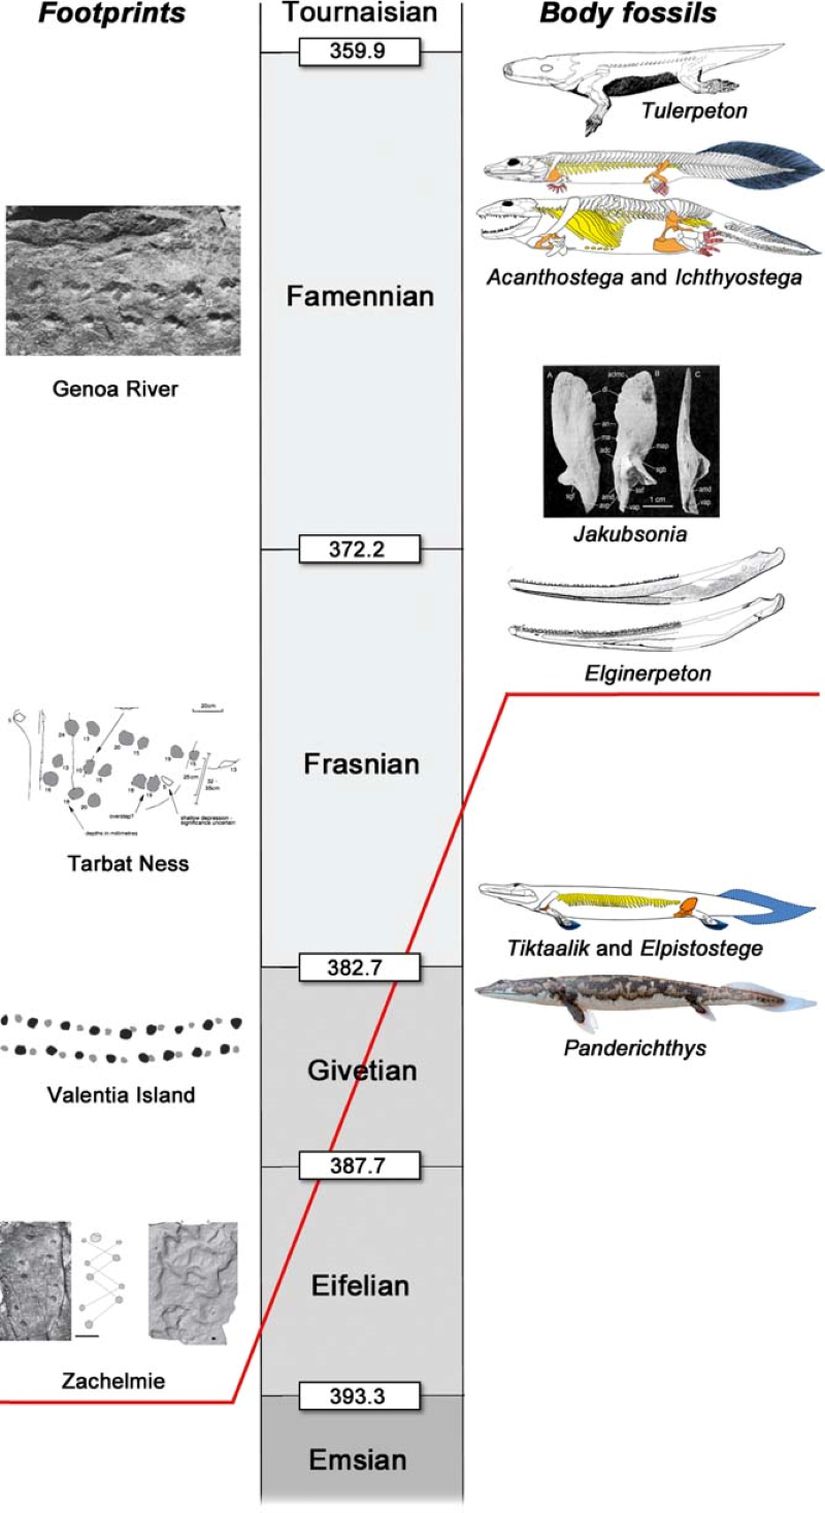 Bulunan ayak izleri ve fosiller. Tarihlere göre solda ayak izleri, sağda fosiller. Kırmızı çizgi, tetrapod fosil ve ayak izleri arasındaki uyuşmazlığı gösteriyor.